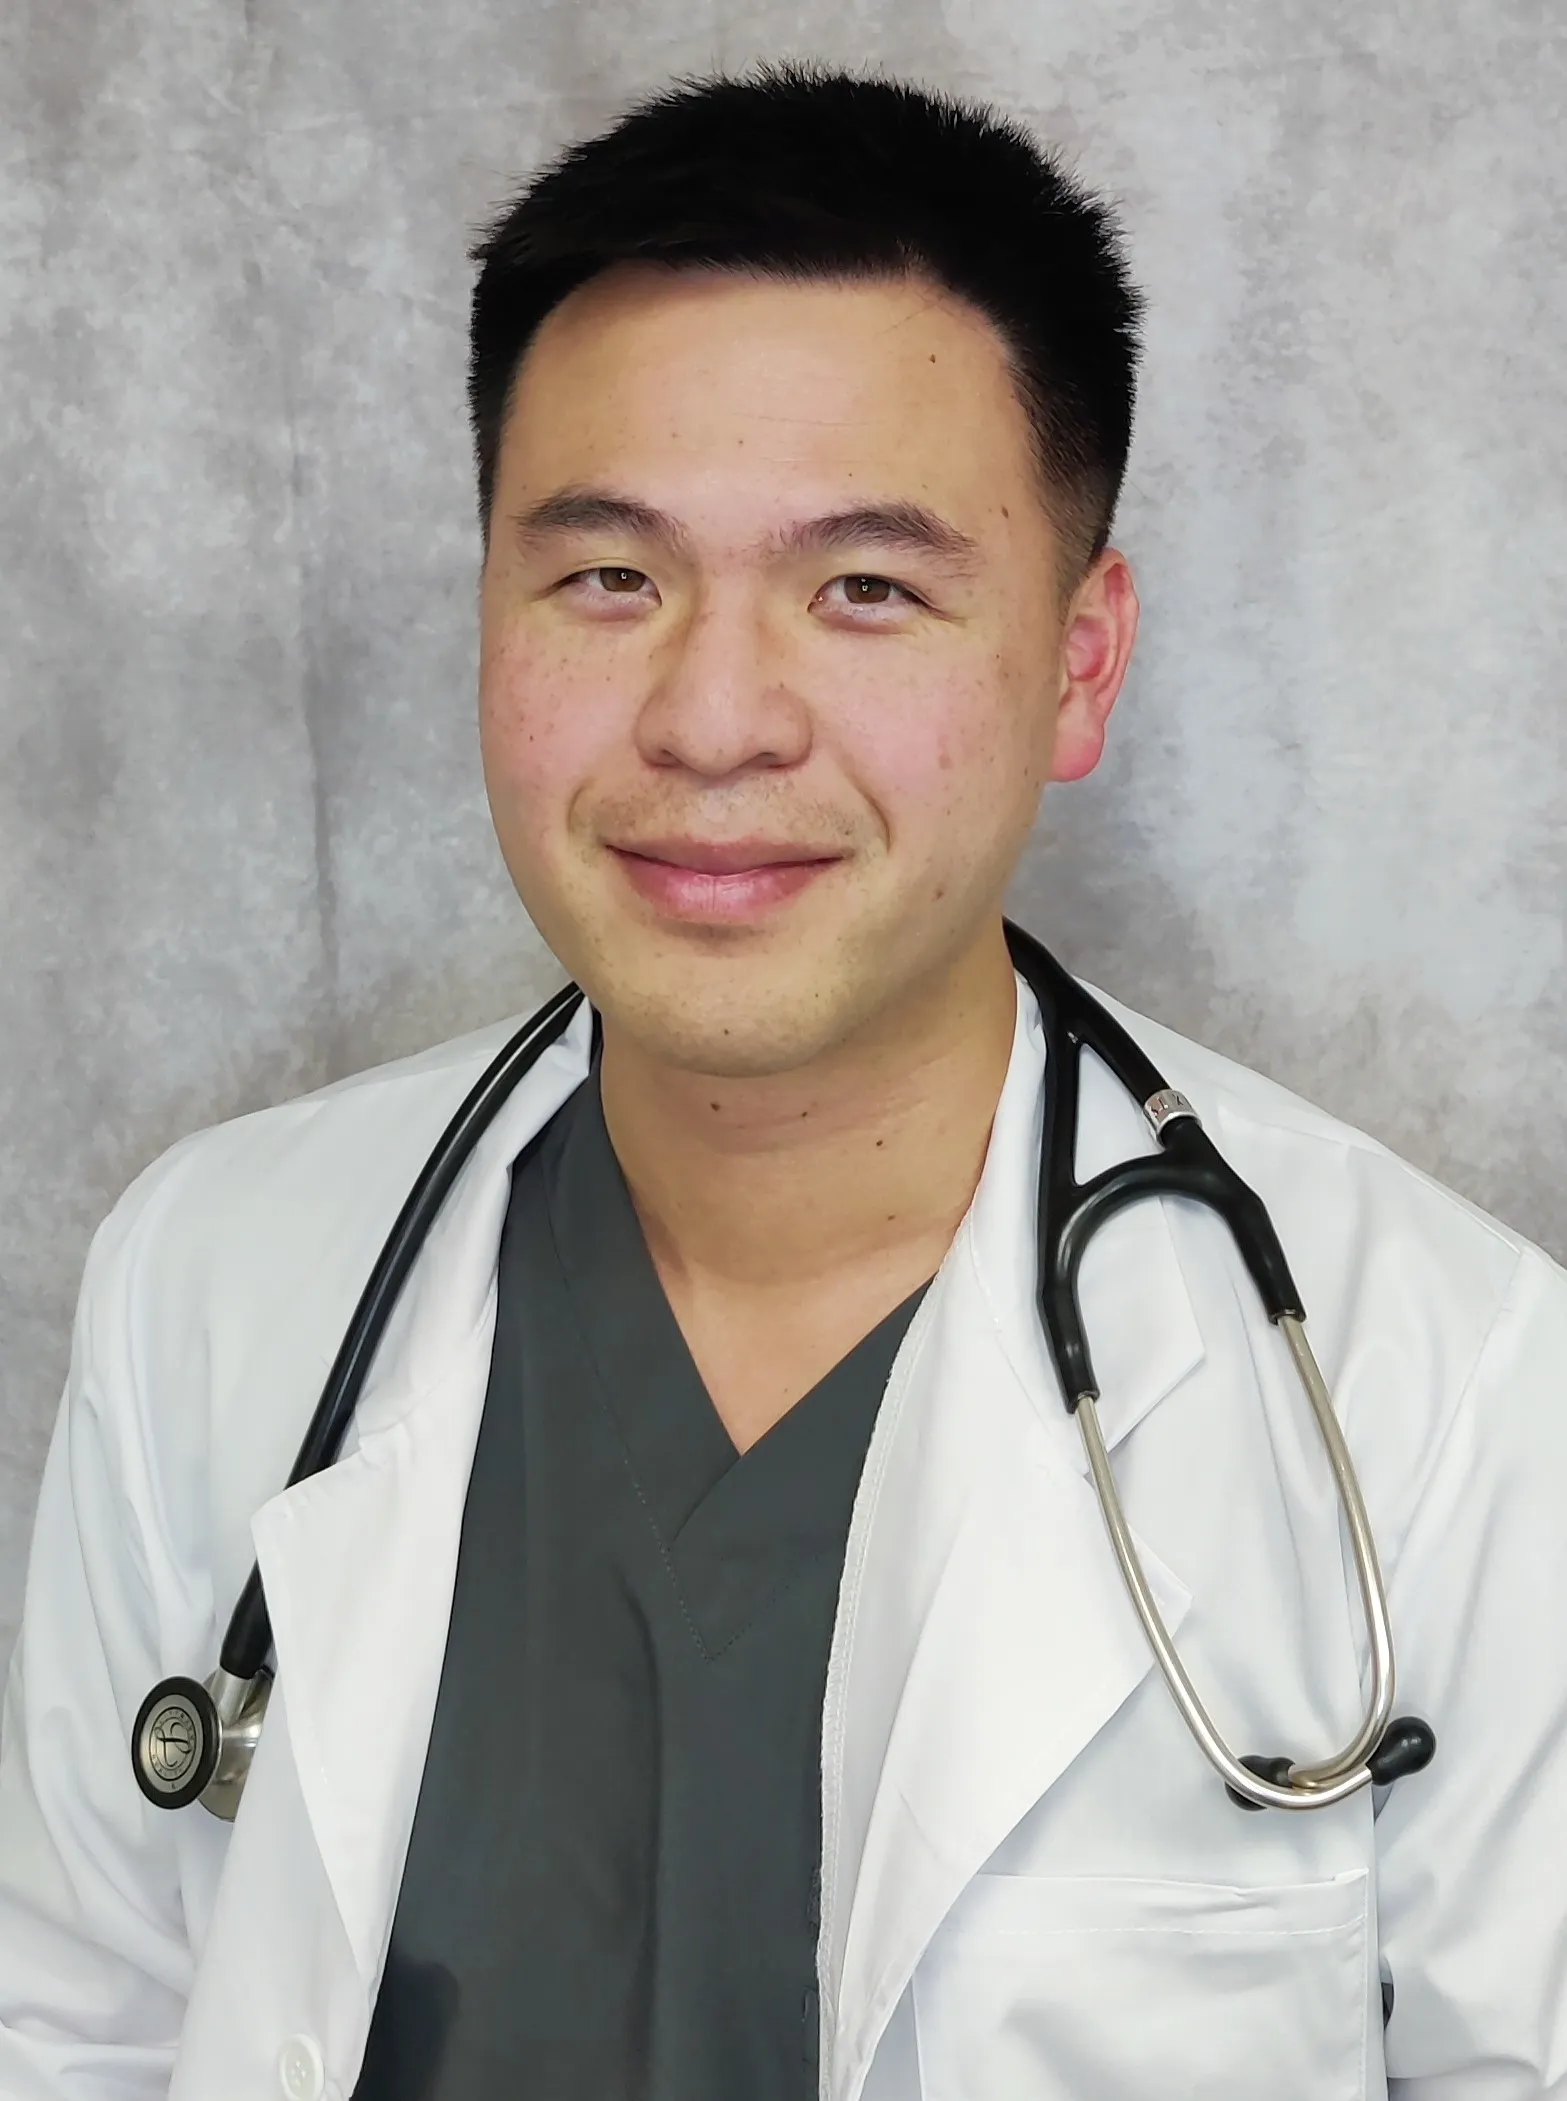 Dr. Tsai smiling